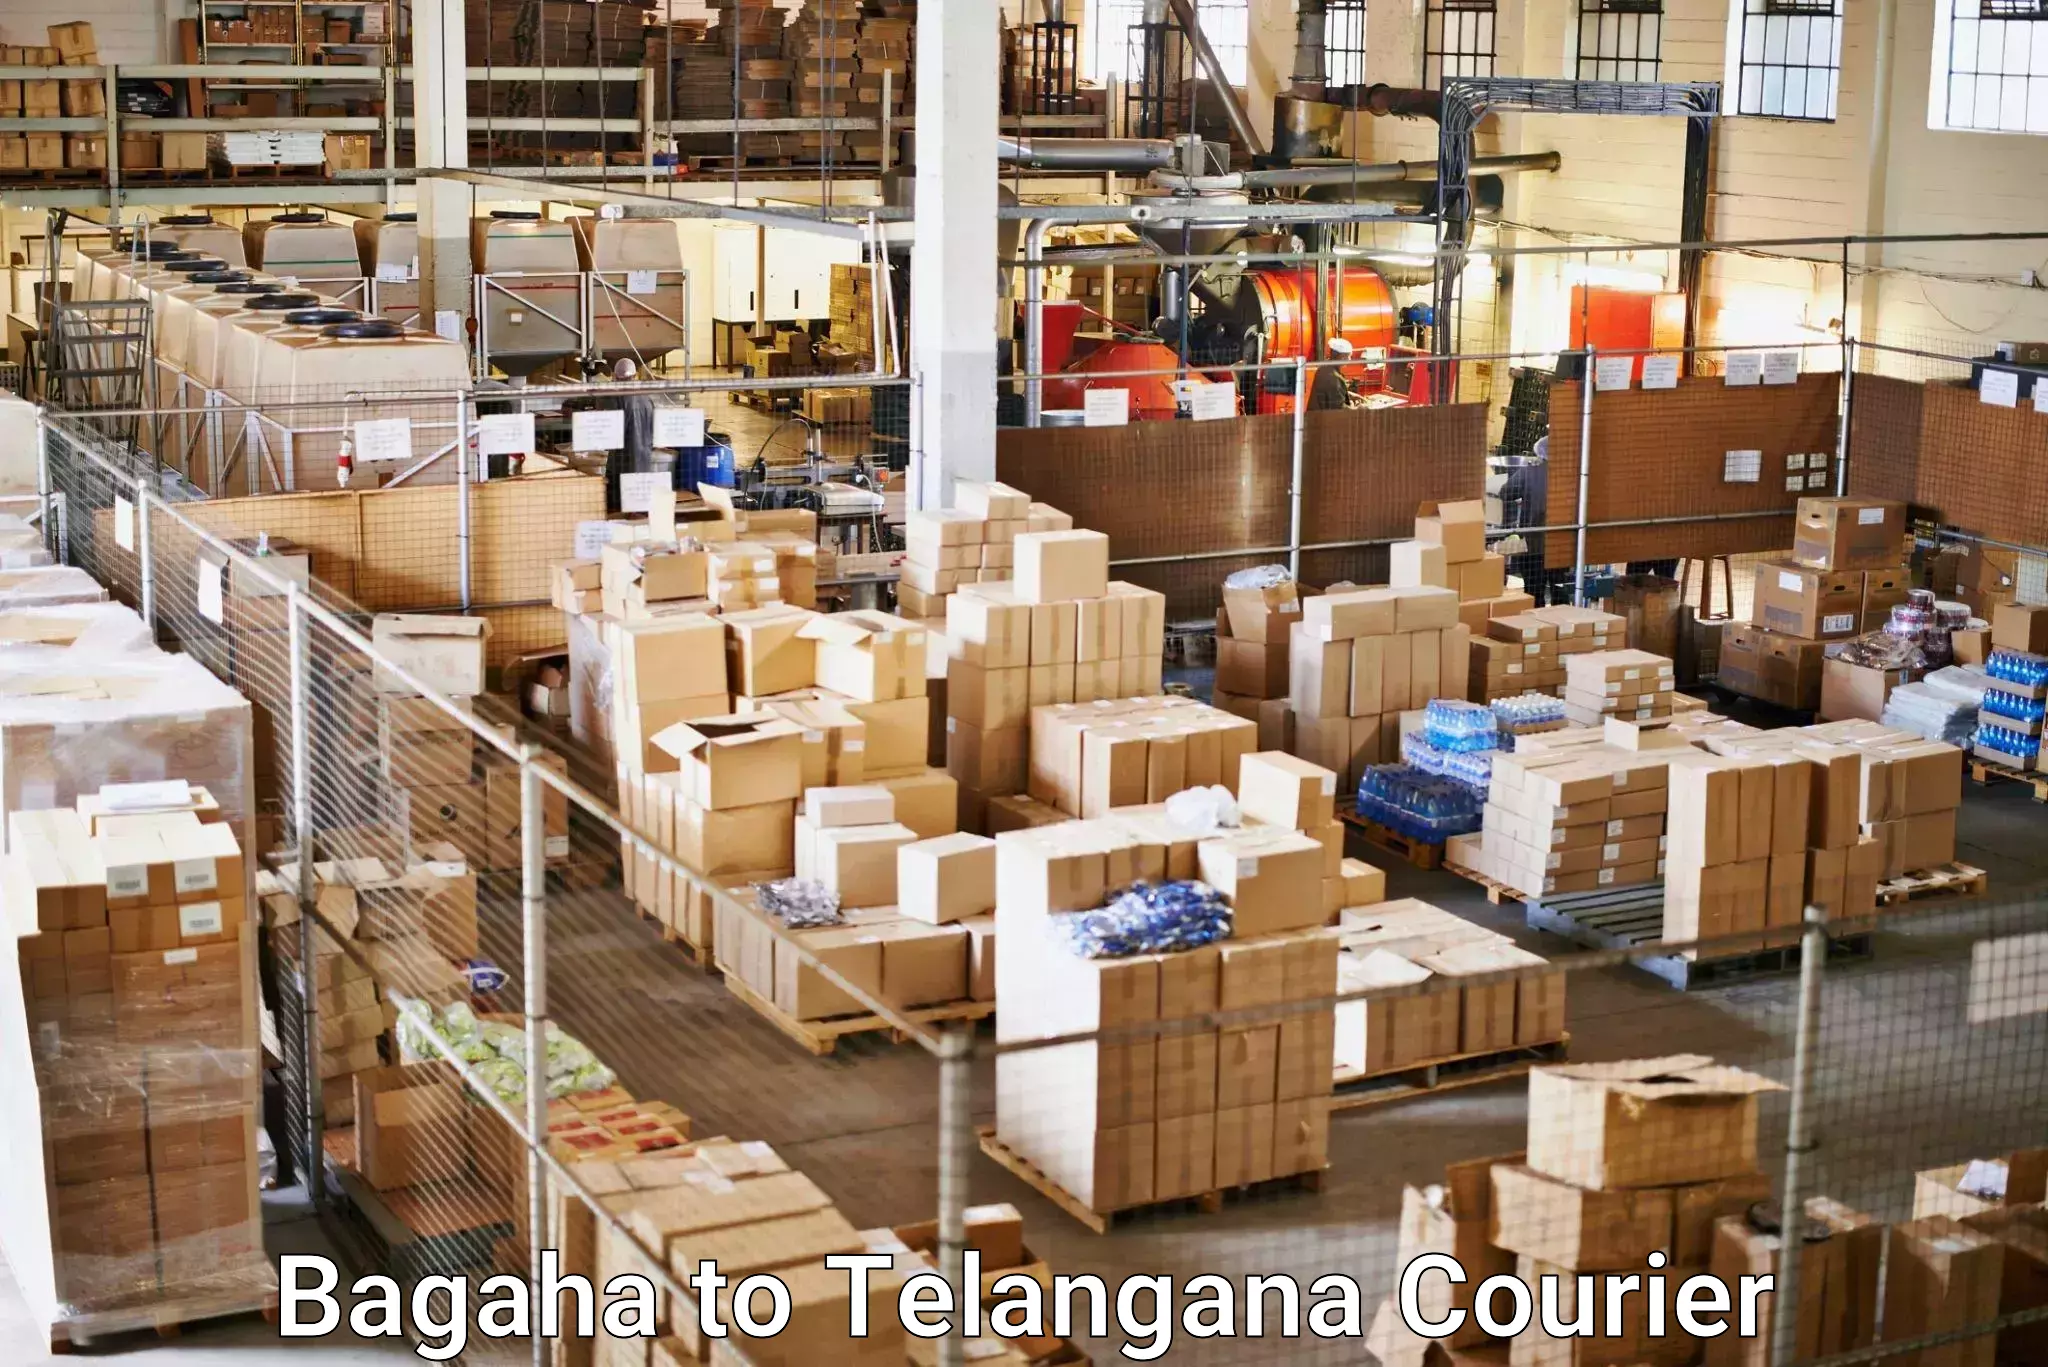 Bulk shipping discounts Bagaha to Tiryani